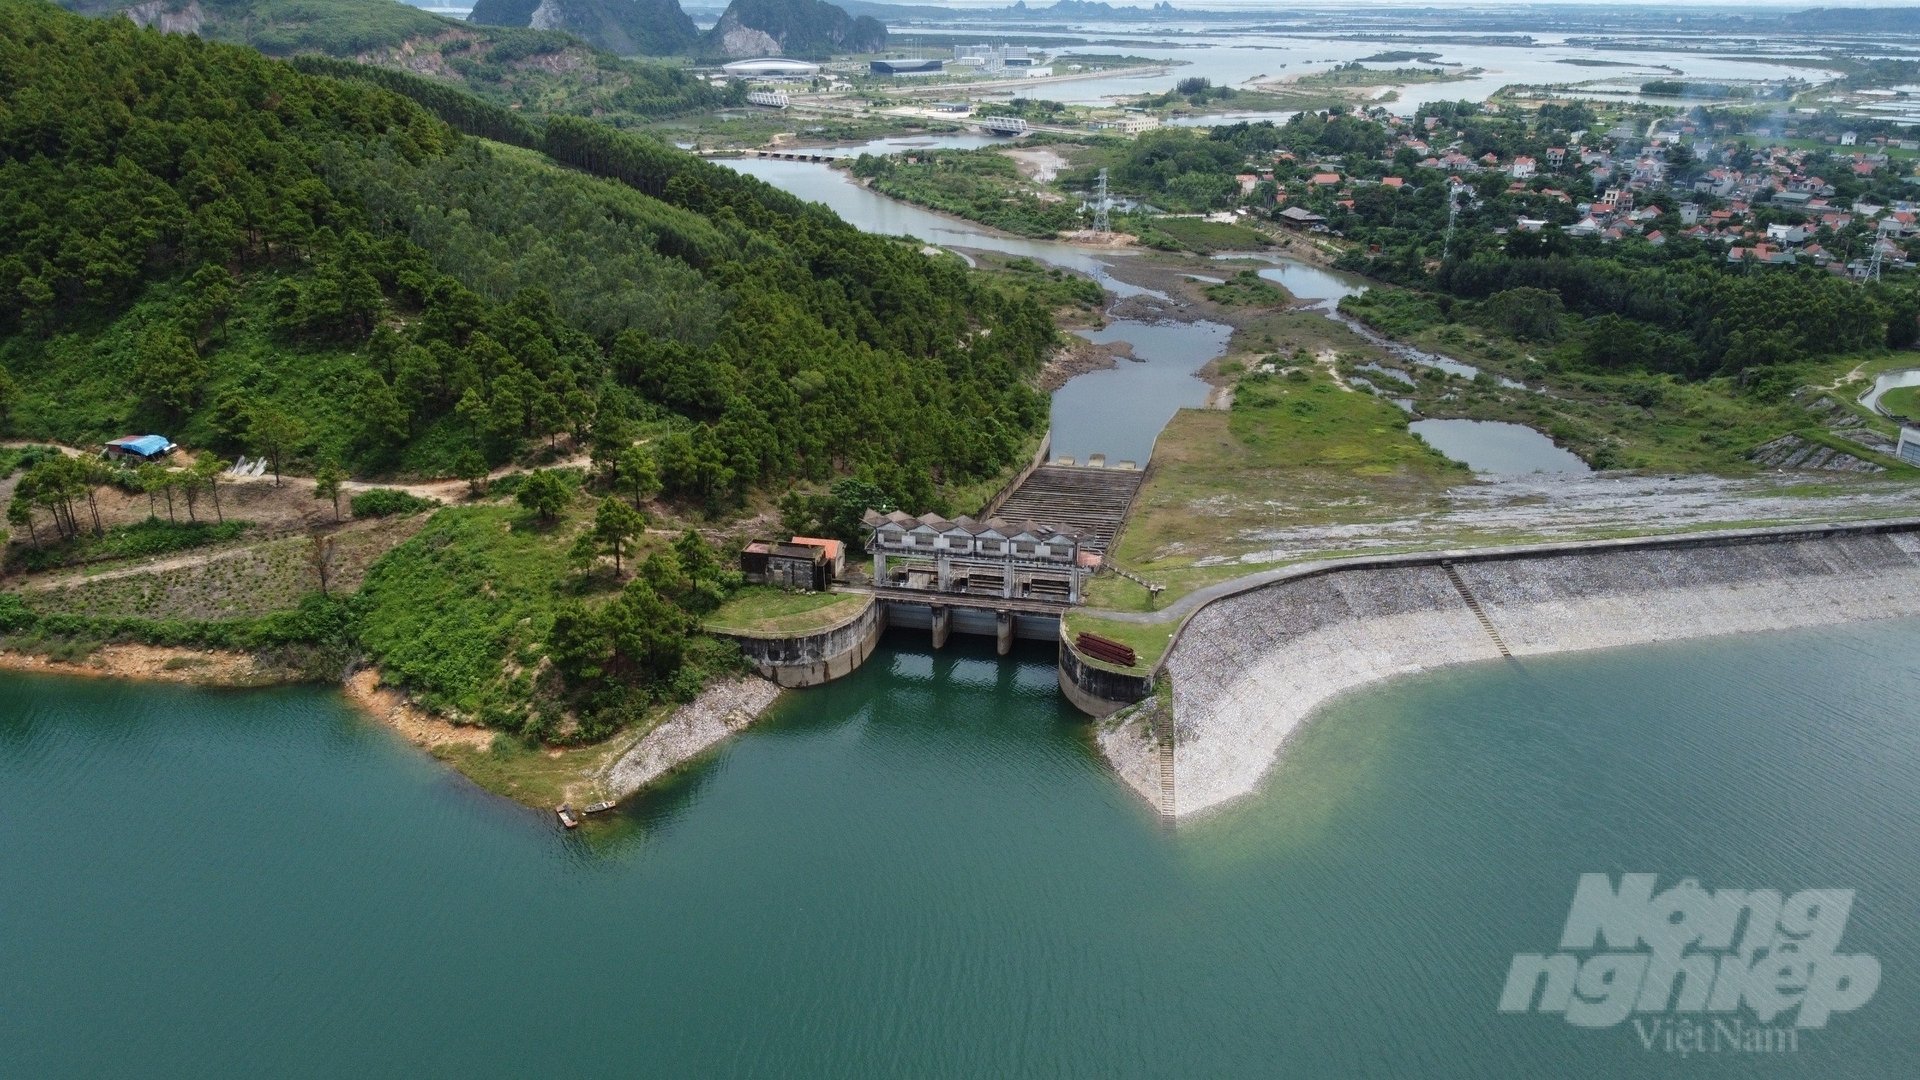 Hồ Yên Lập là hồ chứa nước ngọt lớn nhất của tỉnh Quảng Ninh. Với dung tích 127,5 triệu m3, hồ Yên Lập có đập chính dài 270m, chiều cao đập 37m, hồ có nhiệm vụ rất quan trọng trong việc cấp nước tưới cho trên 8.300ha đất canh tác nông nghiệp, cung cấp nước ngọt cho 1.500ha nuôi trồng thủy sản, tạo nguồn cấp nước sinh hoạt và công nghiệp với công suất 33,5 triệu m3/năm cho các vùng thuộc khu vực TP Uông Bí, TX Quảng Yên và TP Hạ Long. Do đó, hồ Yên Lập có vị trí chiến lược vô cùng quan trọng về an ninh nguồn nước.